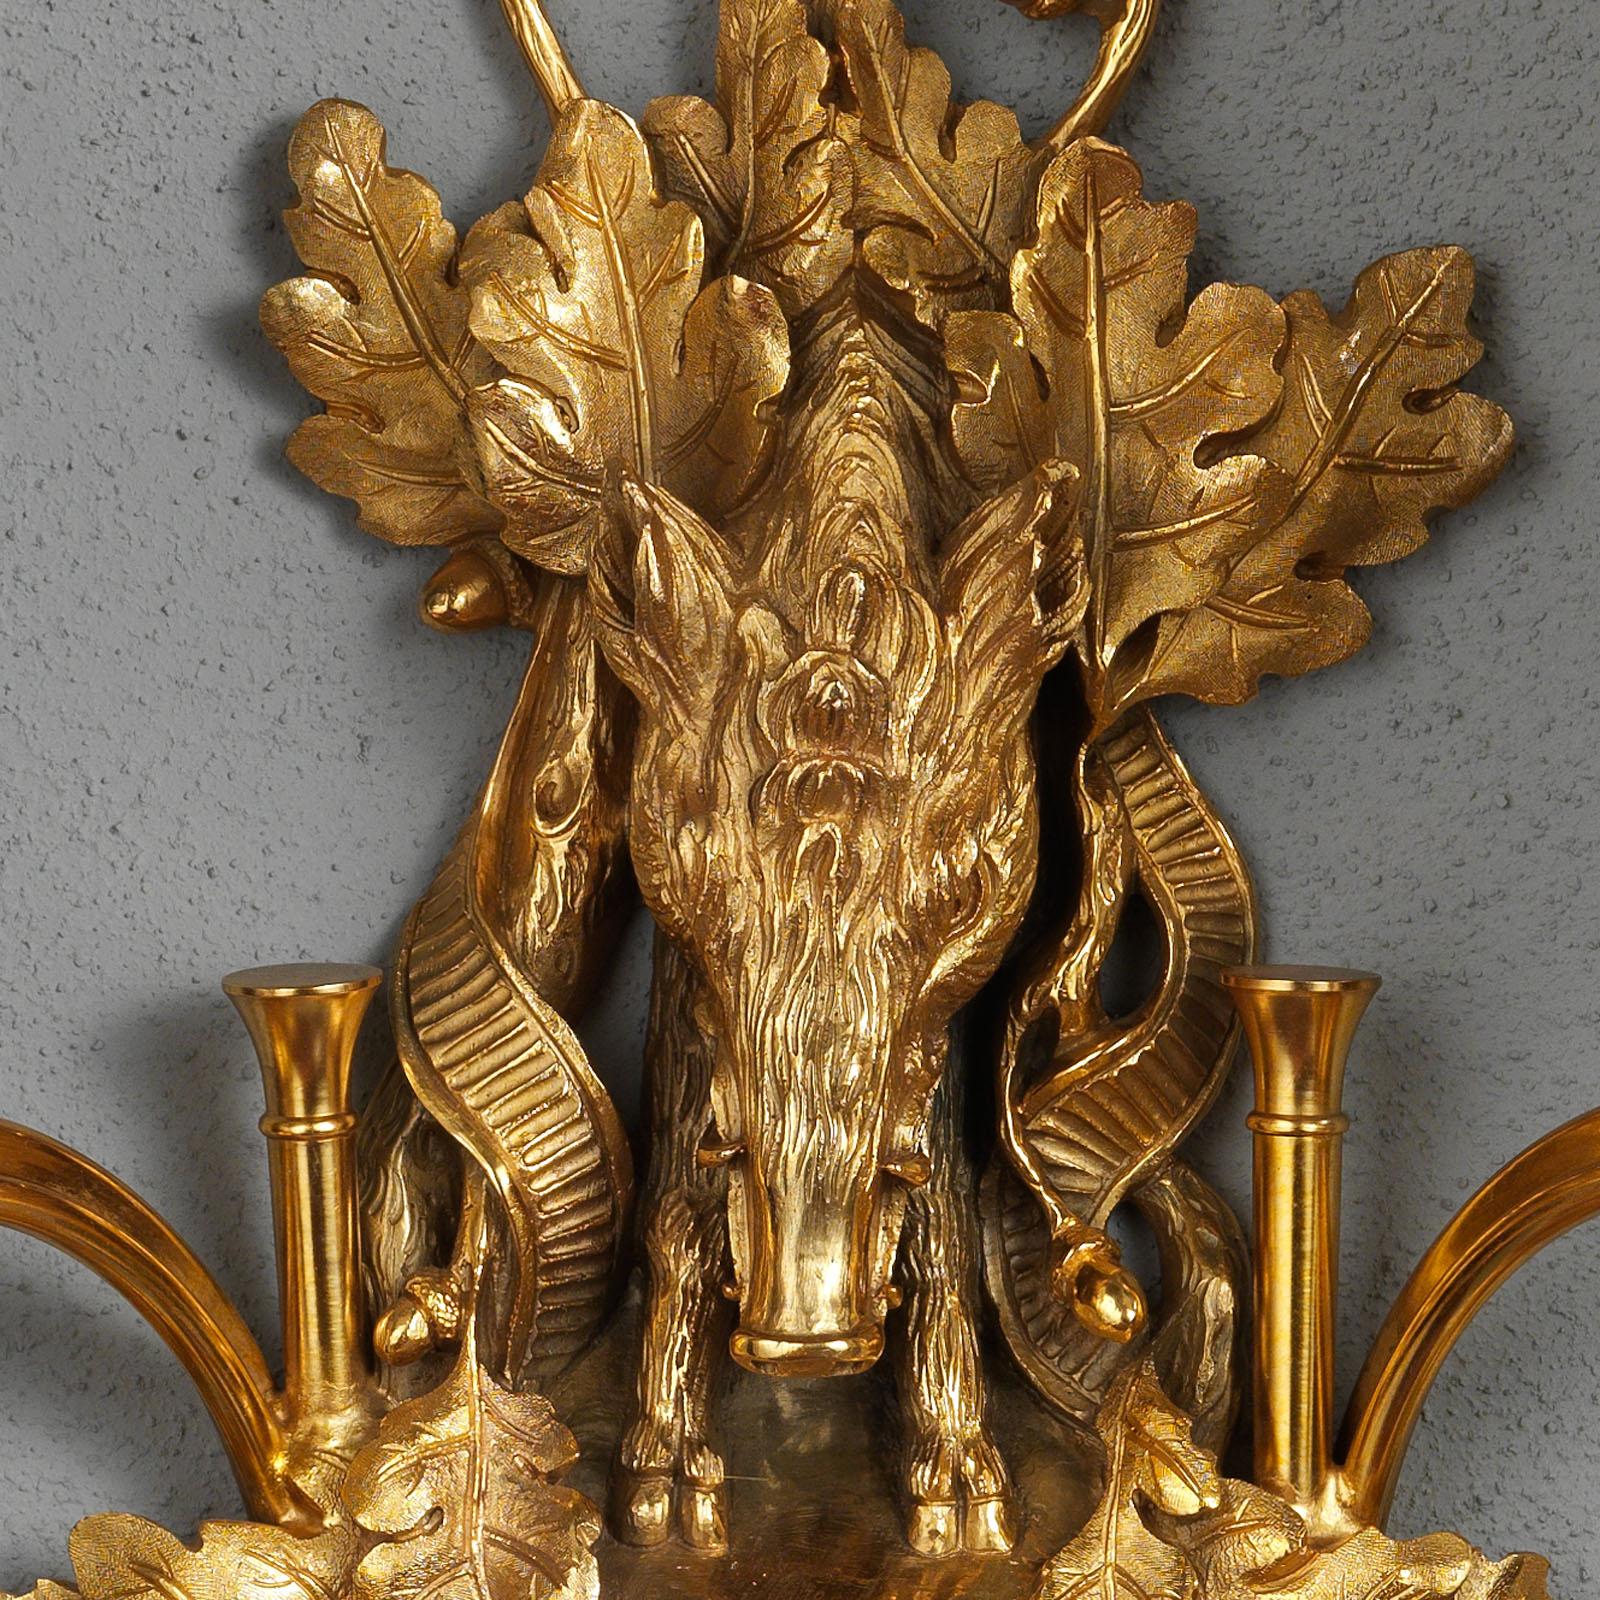 Diese vergoldete Bronzeleuchte von Gherardo Degli Albizzi im Stil von Napoleon III zeigt sowohl Jagd- als auch Pflanzenmotive in Form eines Wildschweins und Eichenblättern, die eine gewundene, vergoldete Rückenplatte bilden, an der die